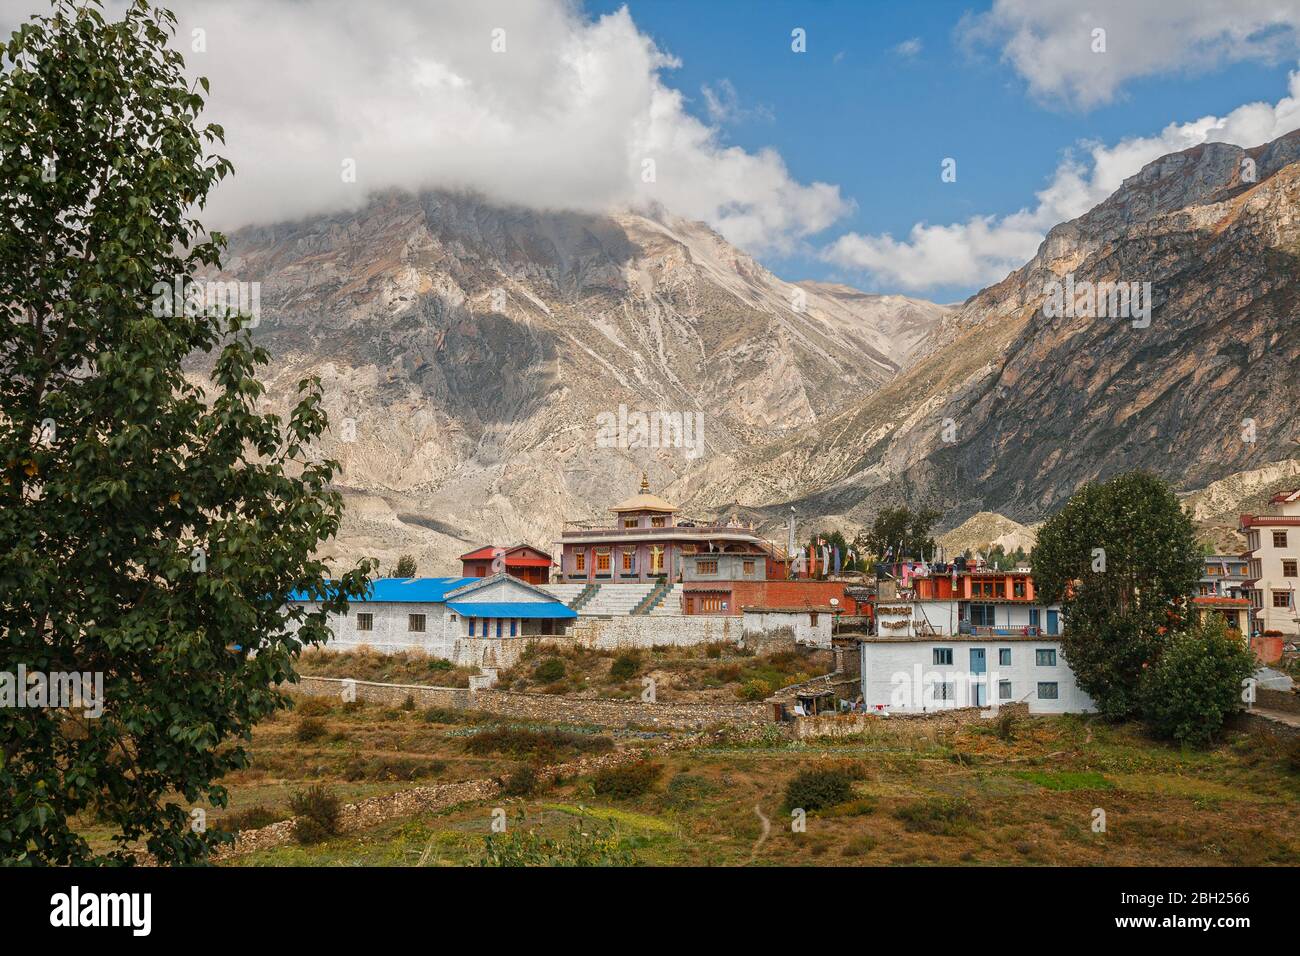 Village de Ranipauwa et Temple Tsechen Kunga Chooeling Gompa, Mustang inférieur, Népal Banque D'Images